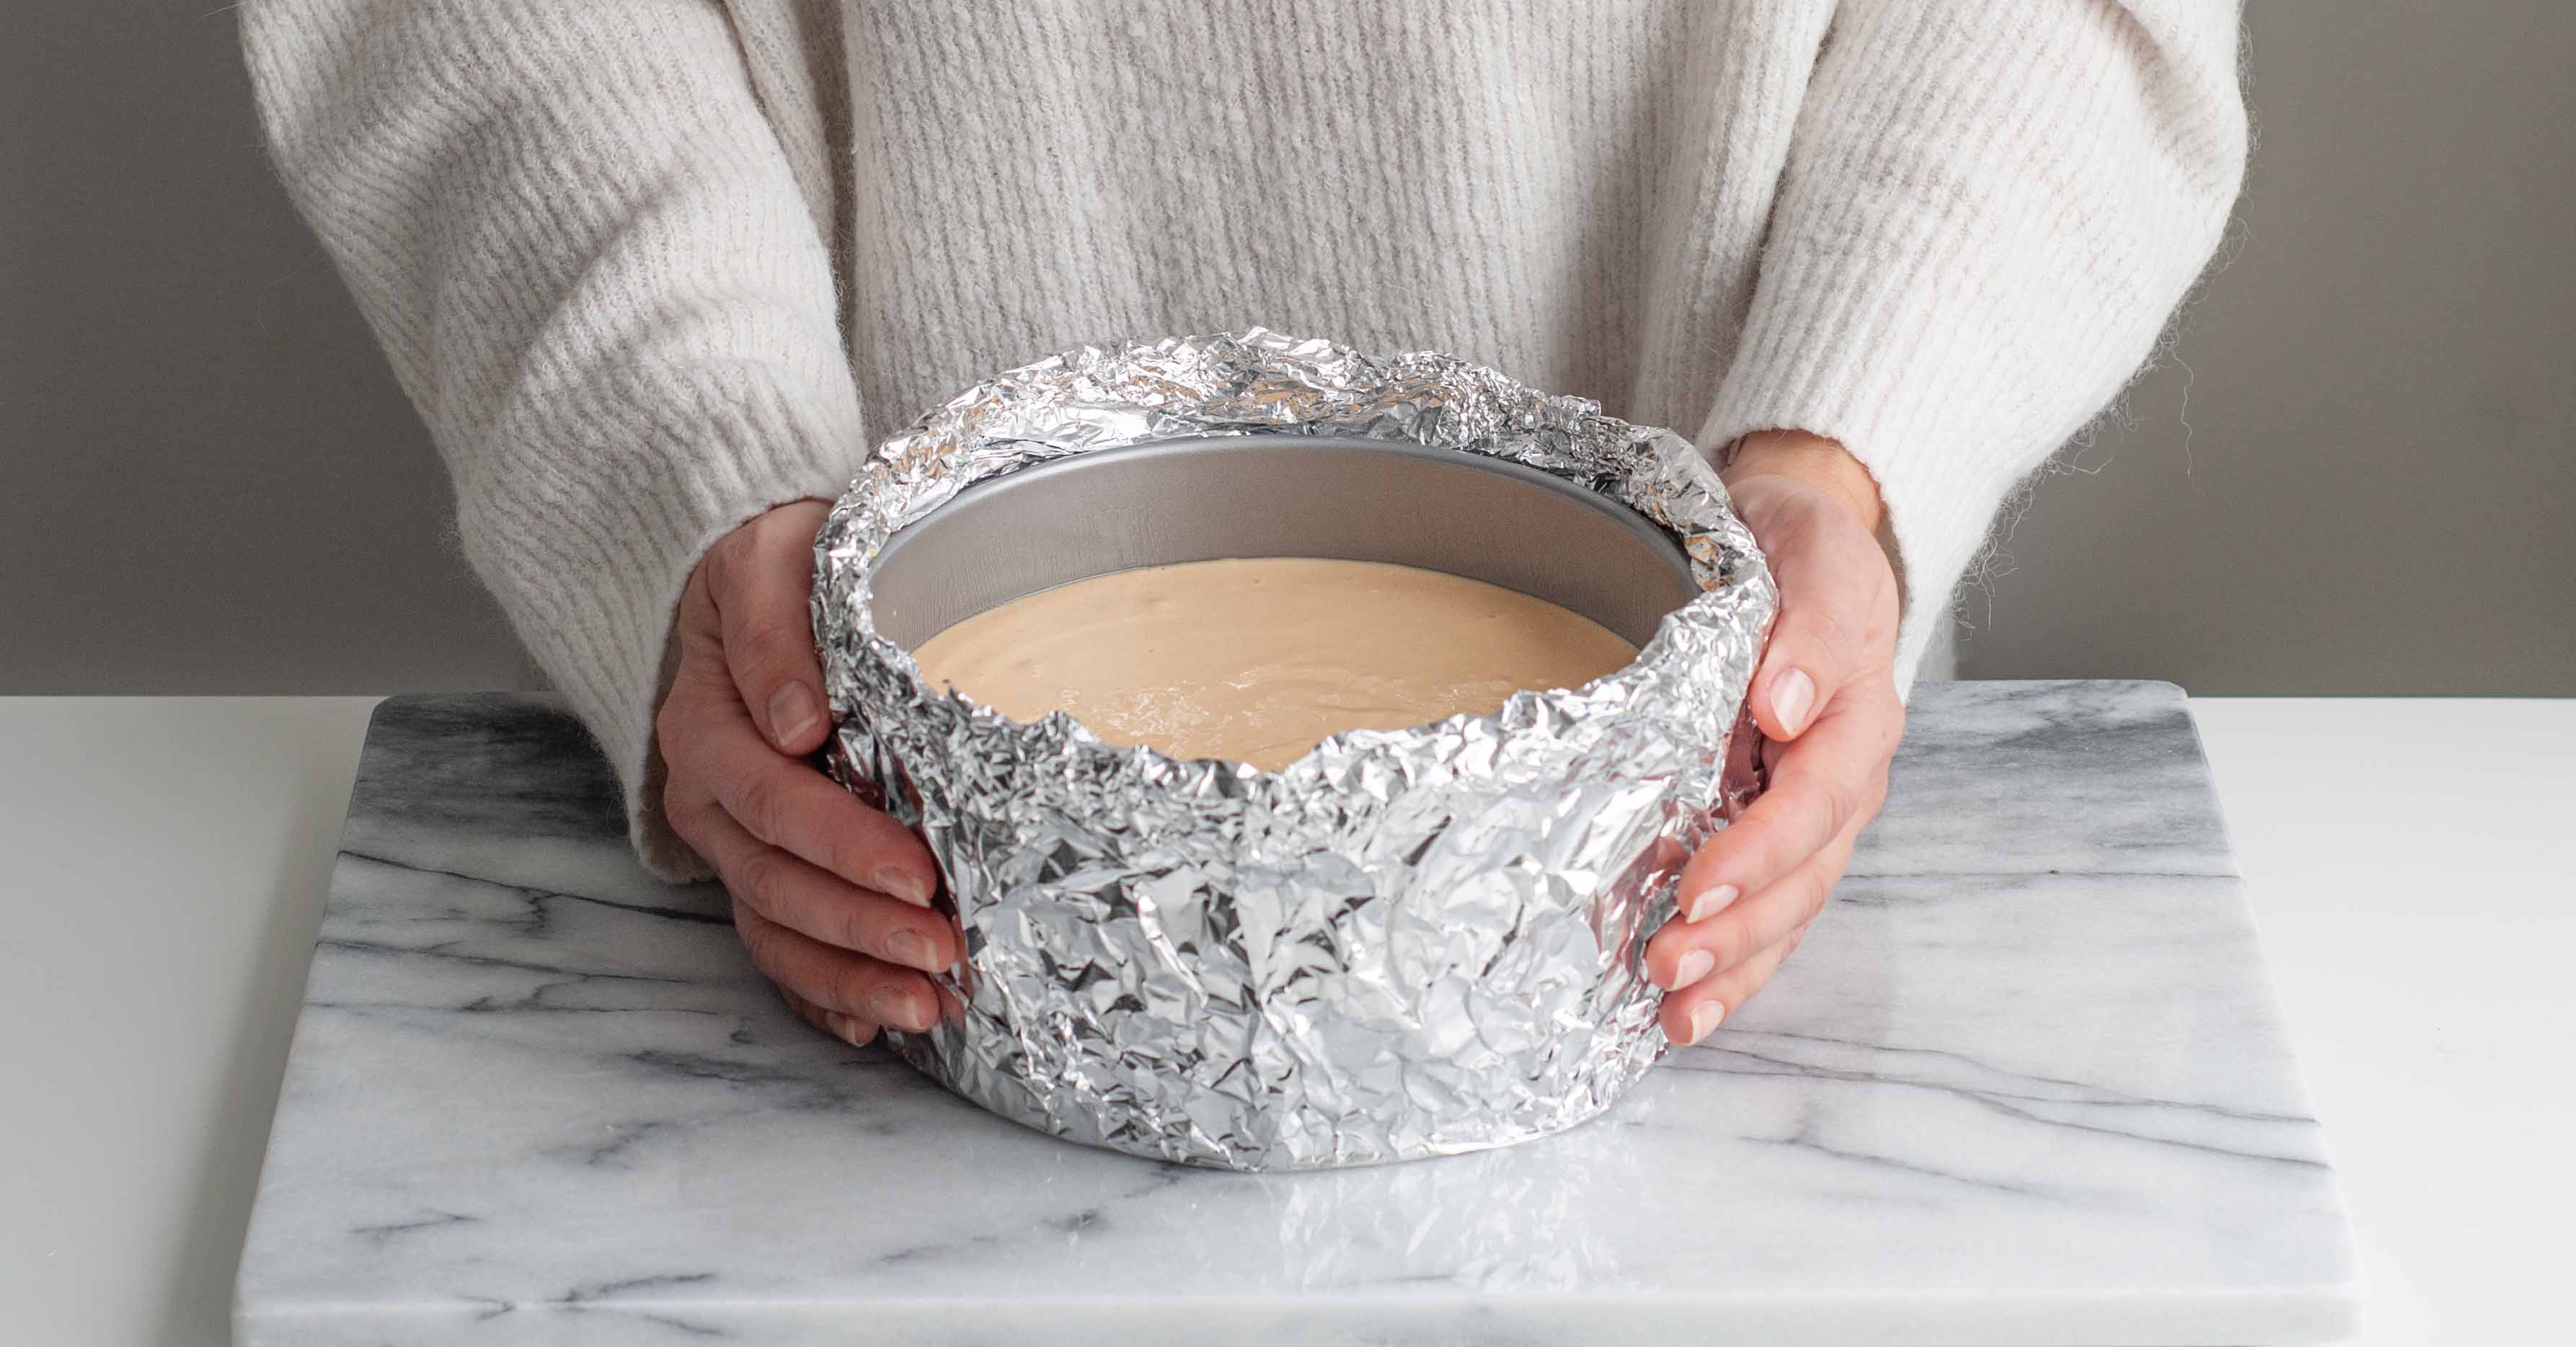 Bakeform med aluminium i vannbad for ostekake